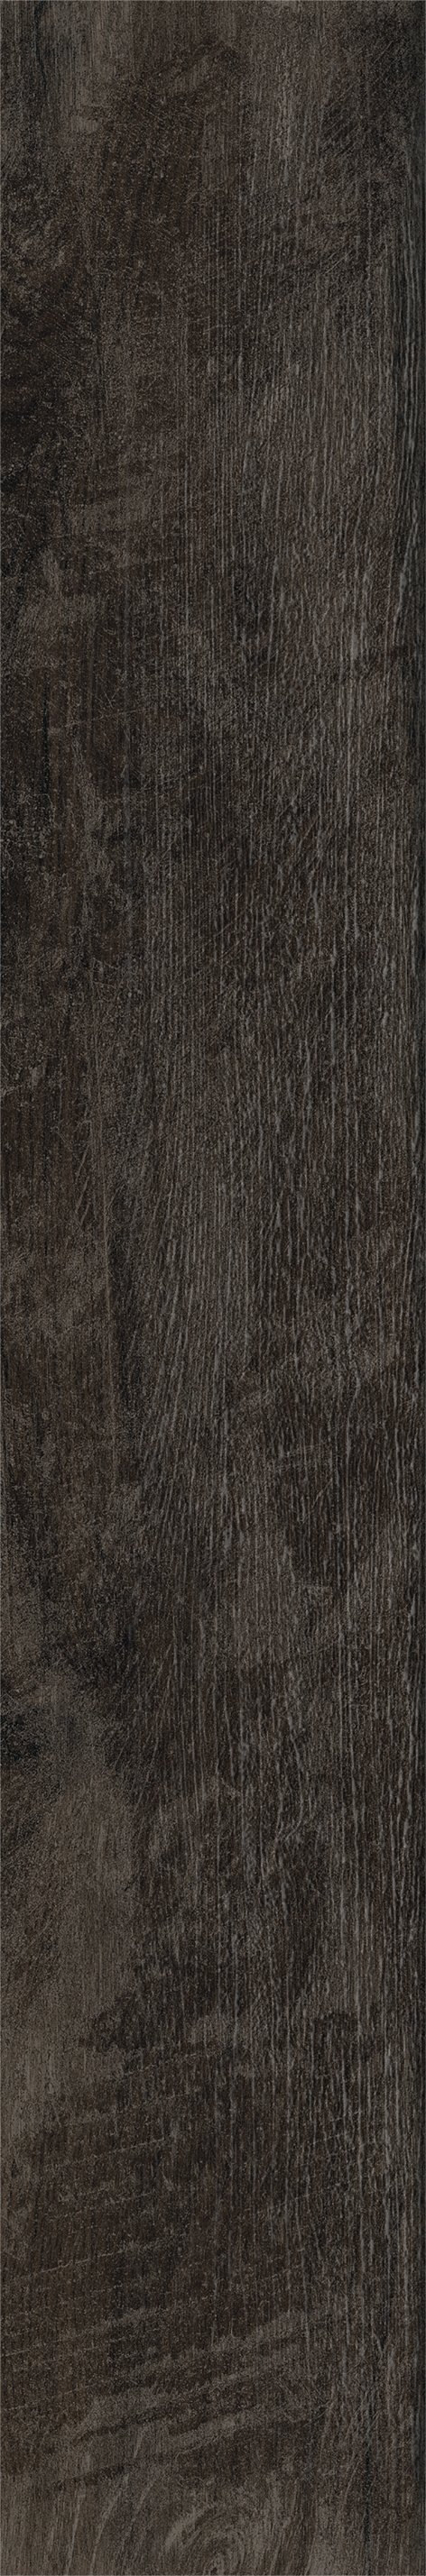 Плитка из керамогранита матовая Italon Грув 20x120 коричневый (610010001884) плитка из керамогранита матовая italon элемент вуд 20x120 бежевый 610010001090